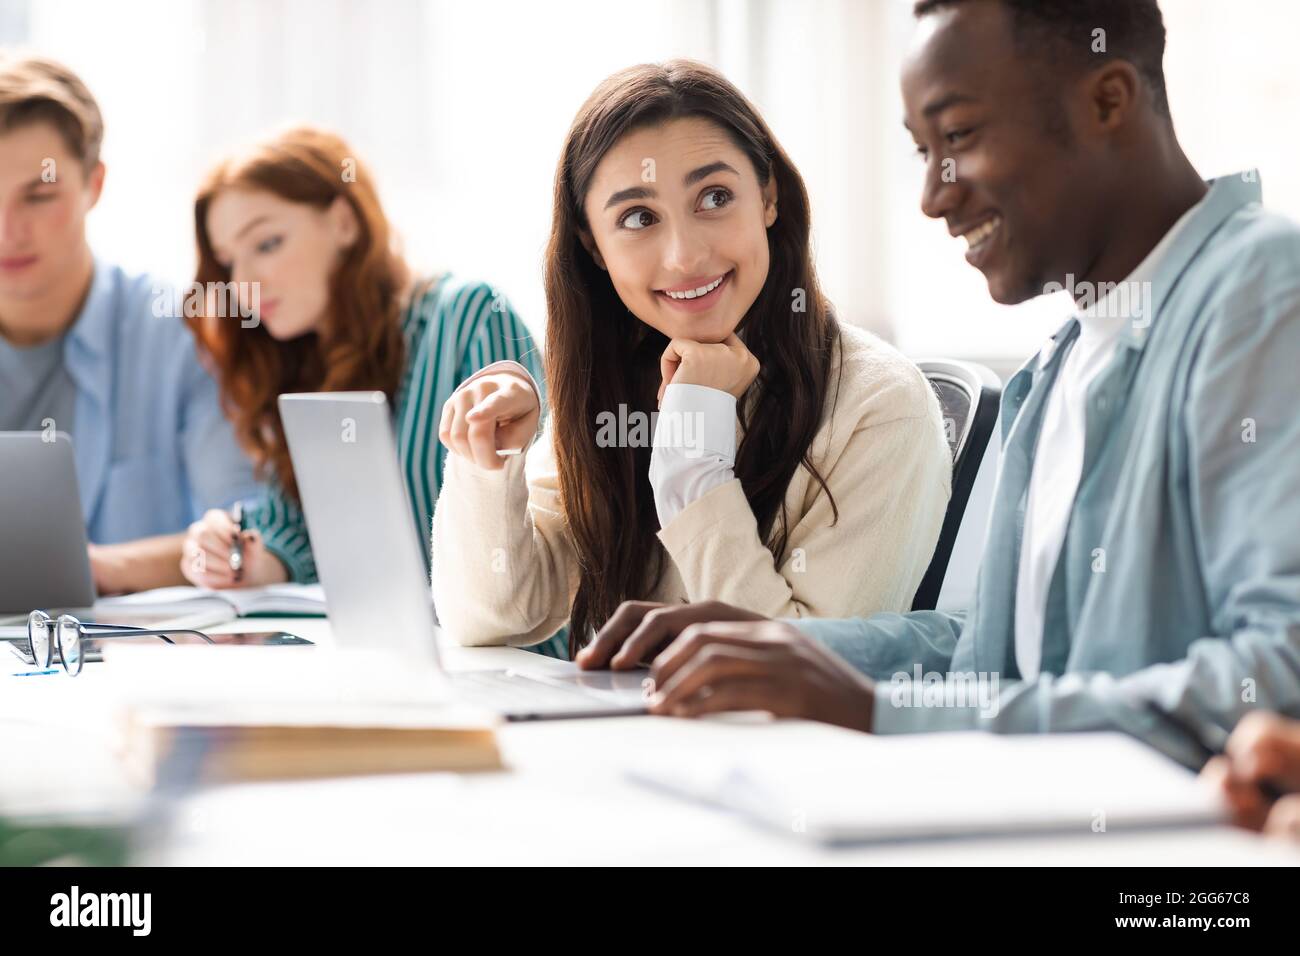 Lächelnde Studenten, die am Schreibtisch sitzen und an einem Gruppenprojekt arbeiten Stockfoto